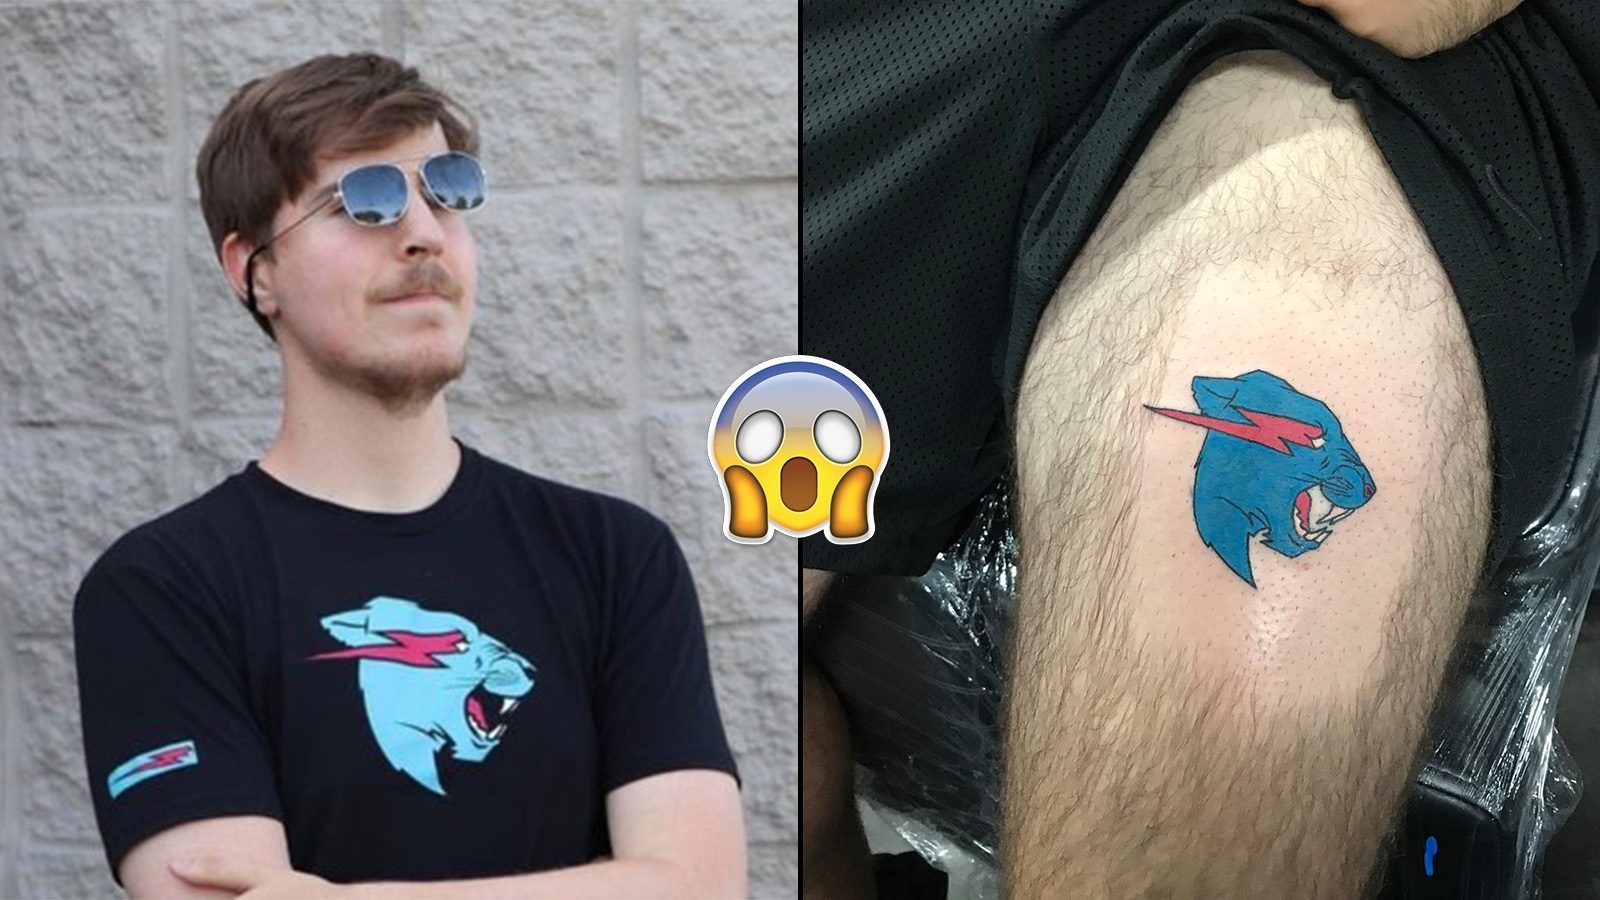 MrBeast Superfan Stuns the Internet With a Magnificent Tattoo   EssentiallySports